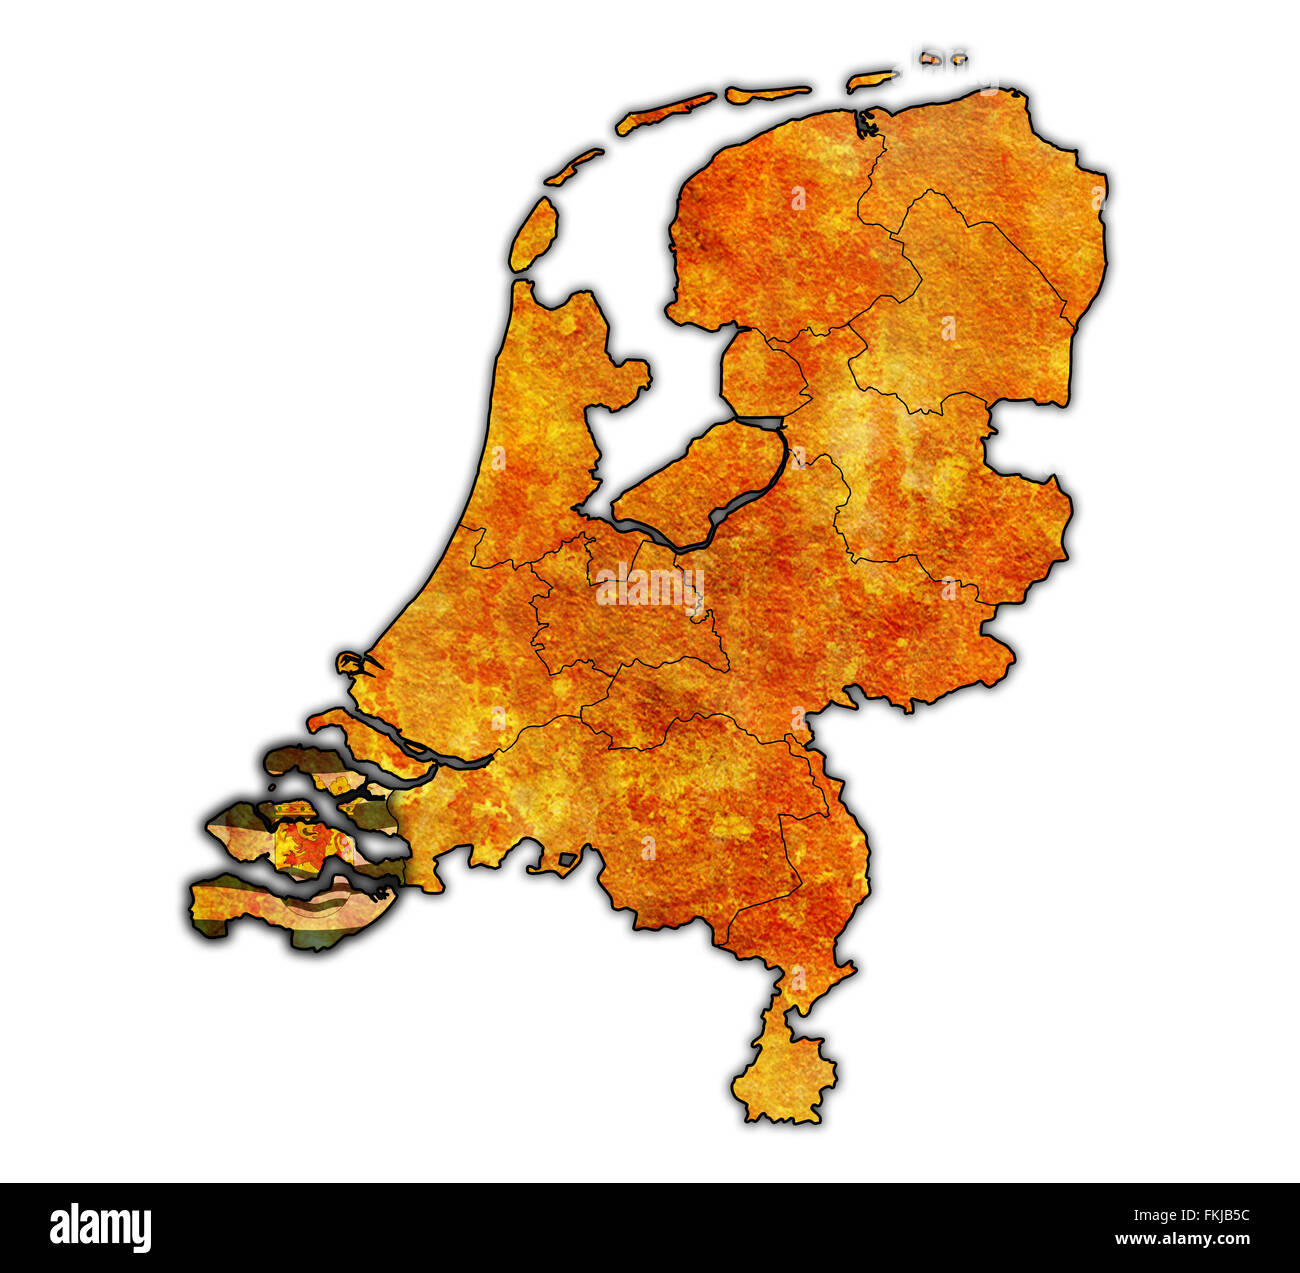 Zeeland-Flagge auf Karte mit Grenzen der Provinzen in den Niederlanden Stockfoto